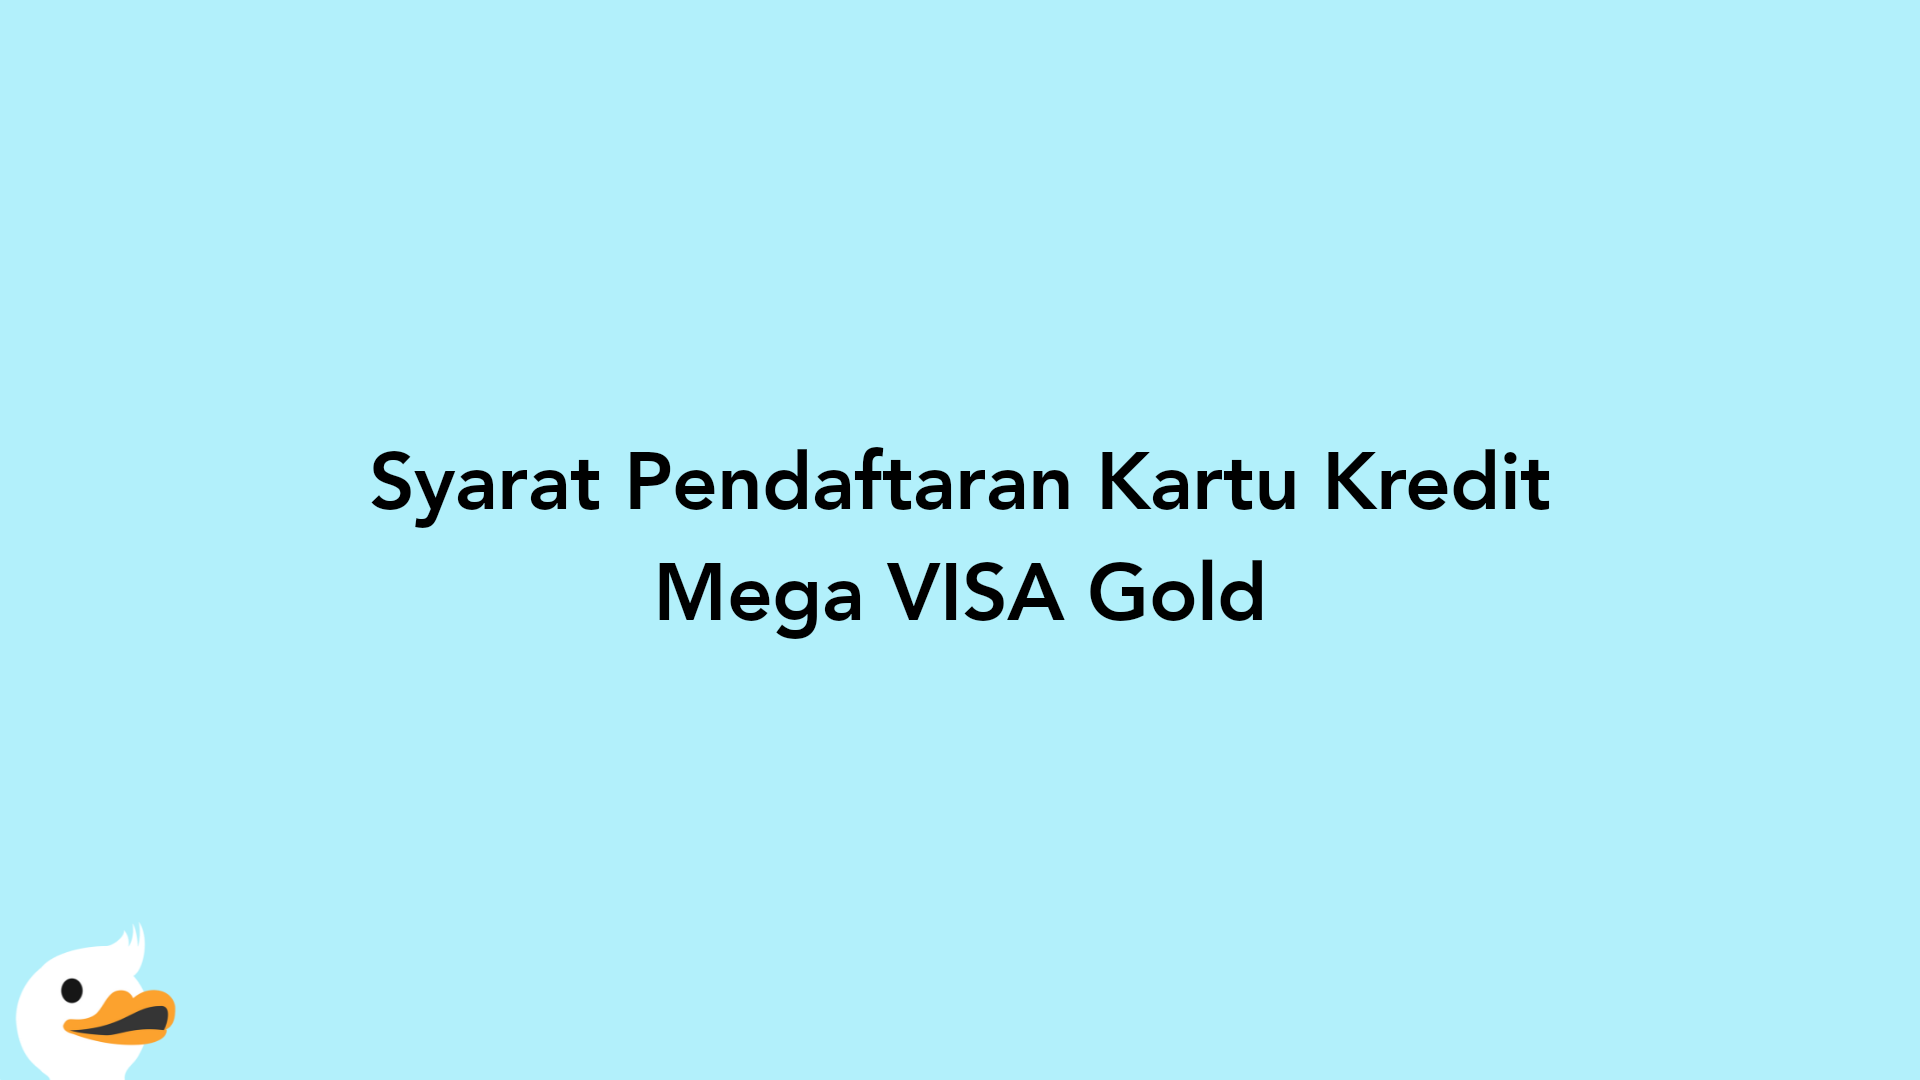 Syarat Pendaftaran Kartu Kredit Mega VISA Gold